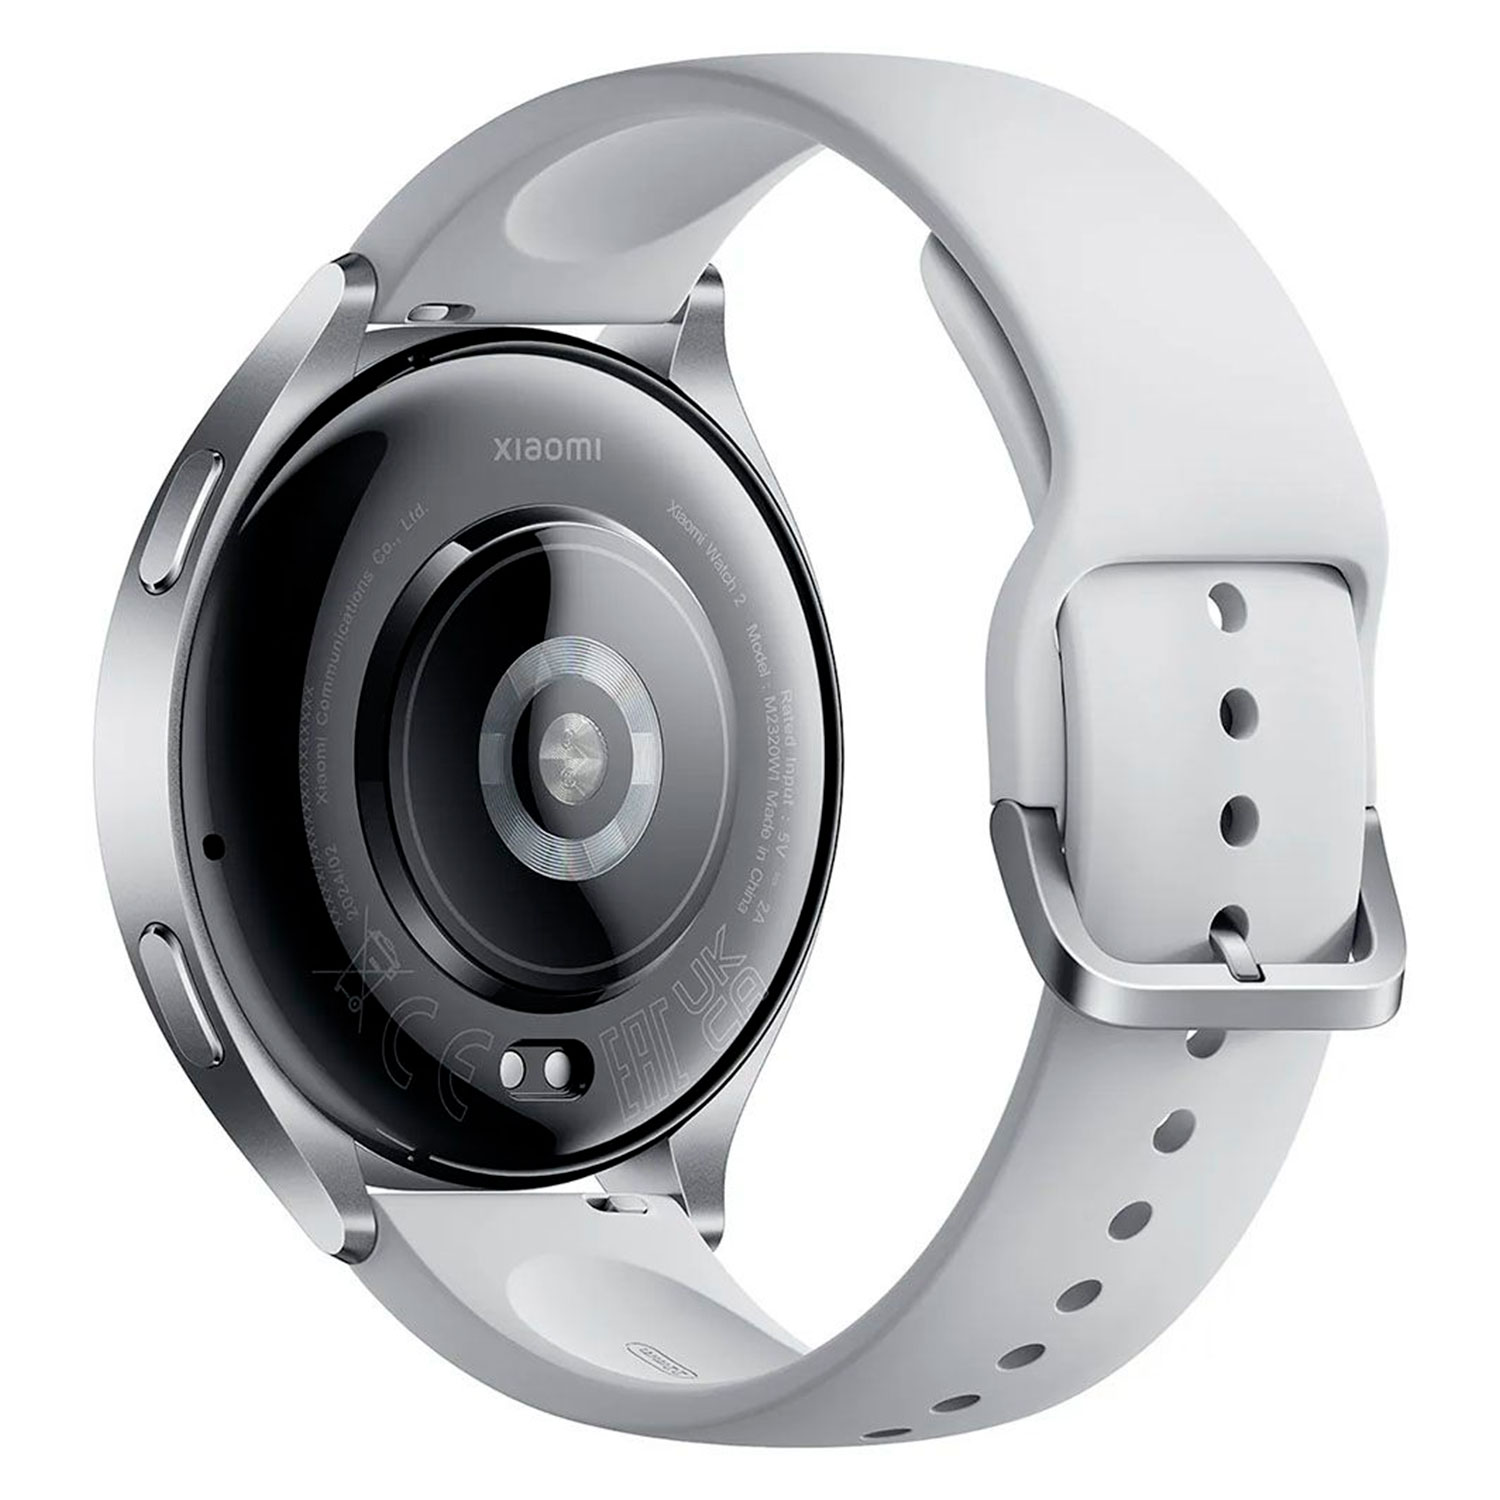 Smartwatch Xiaomi Watch 2 M2320W1 - Prata